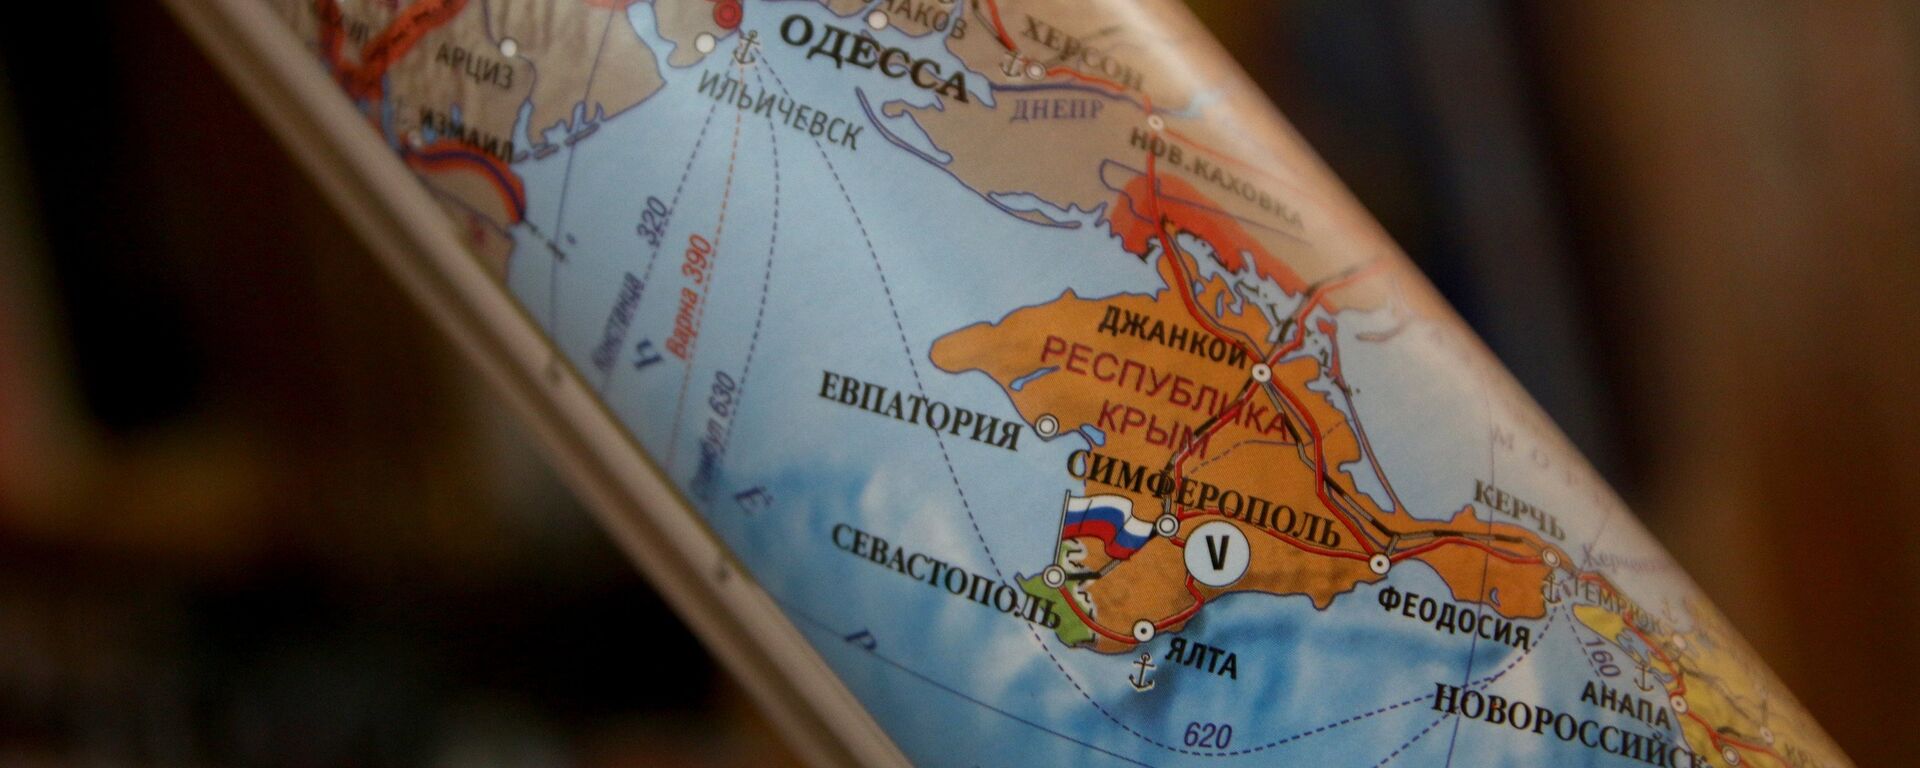 Политичка мапа која приказује Крим као саставни део Русије - Sputnik Србија, 1920, 12.12.2021